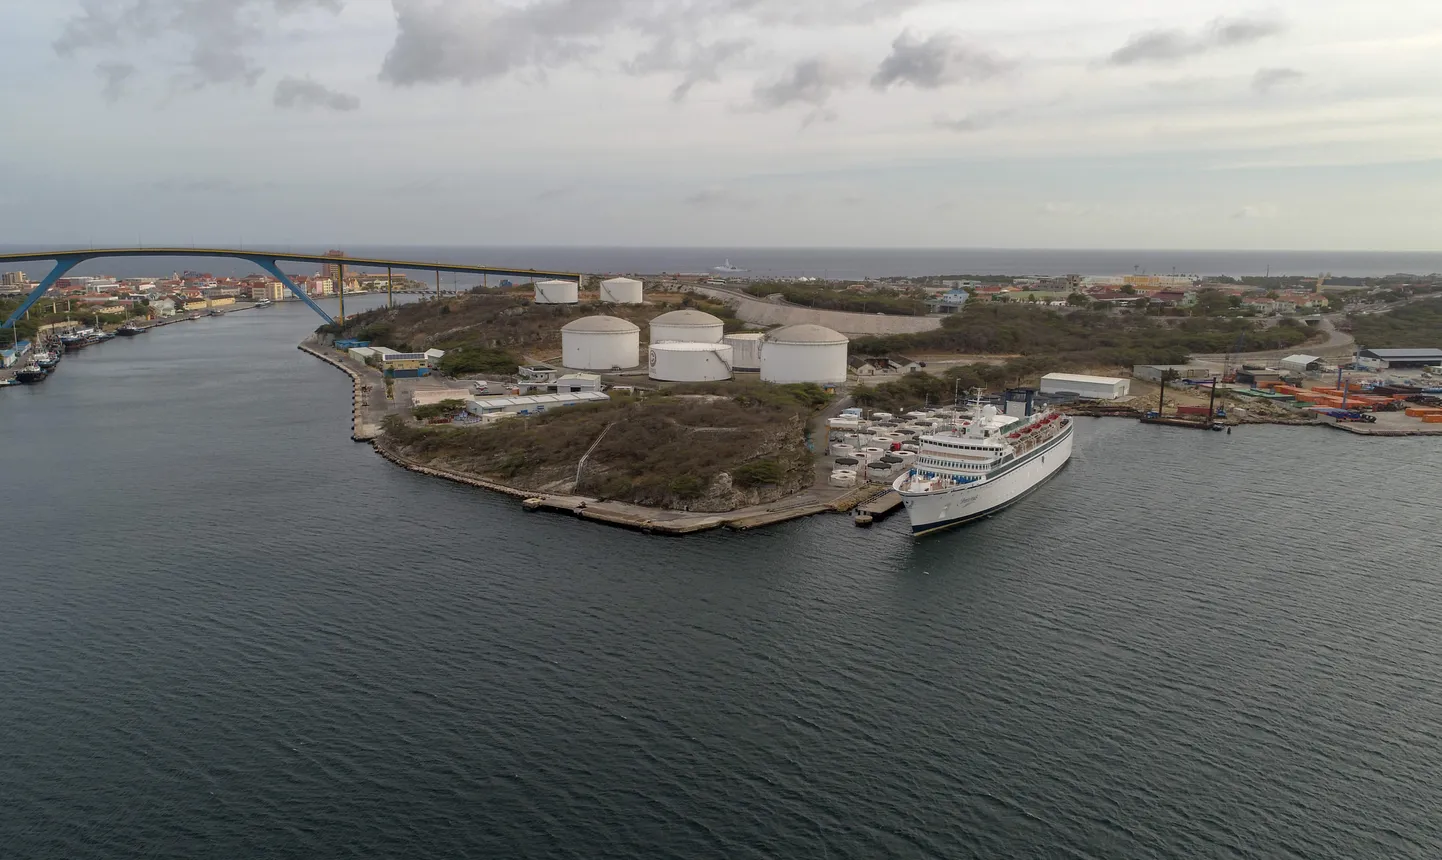 Vaade Curacaol asuvale Willemstadi sadamale.